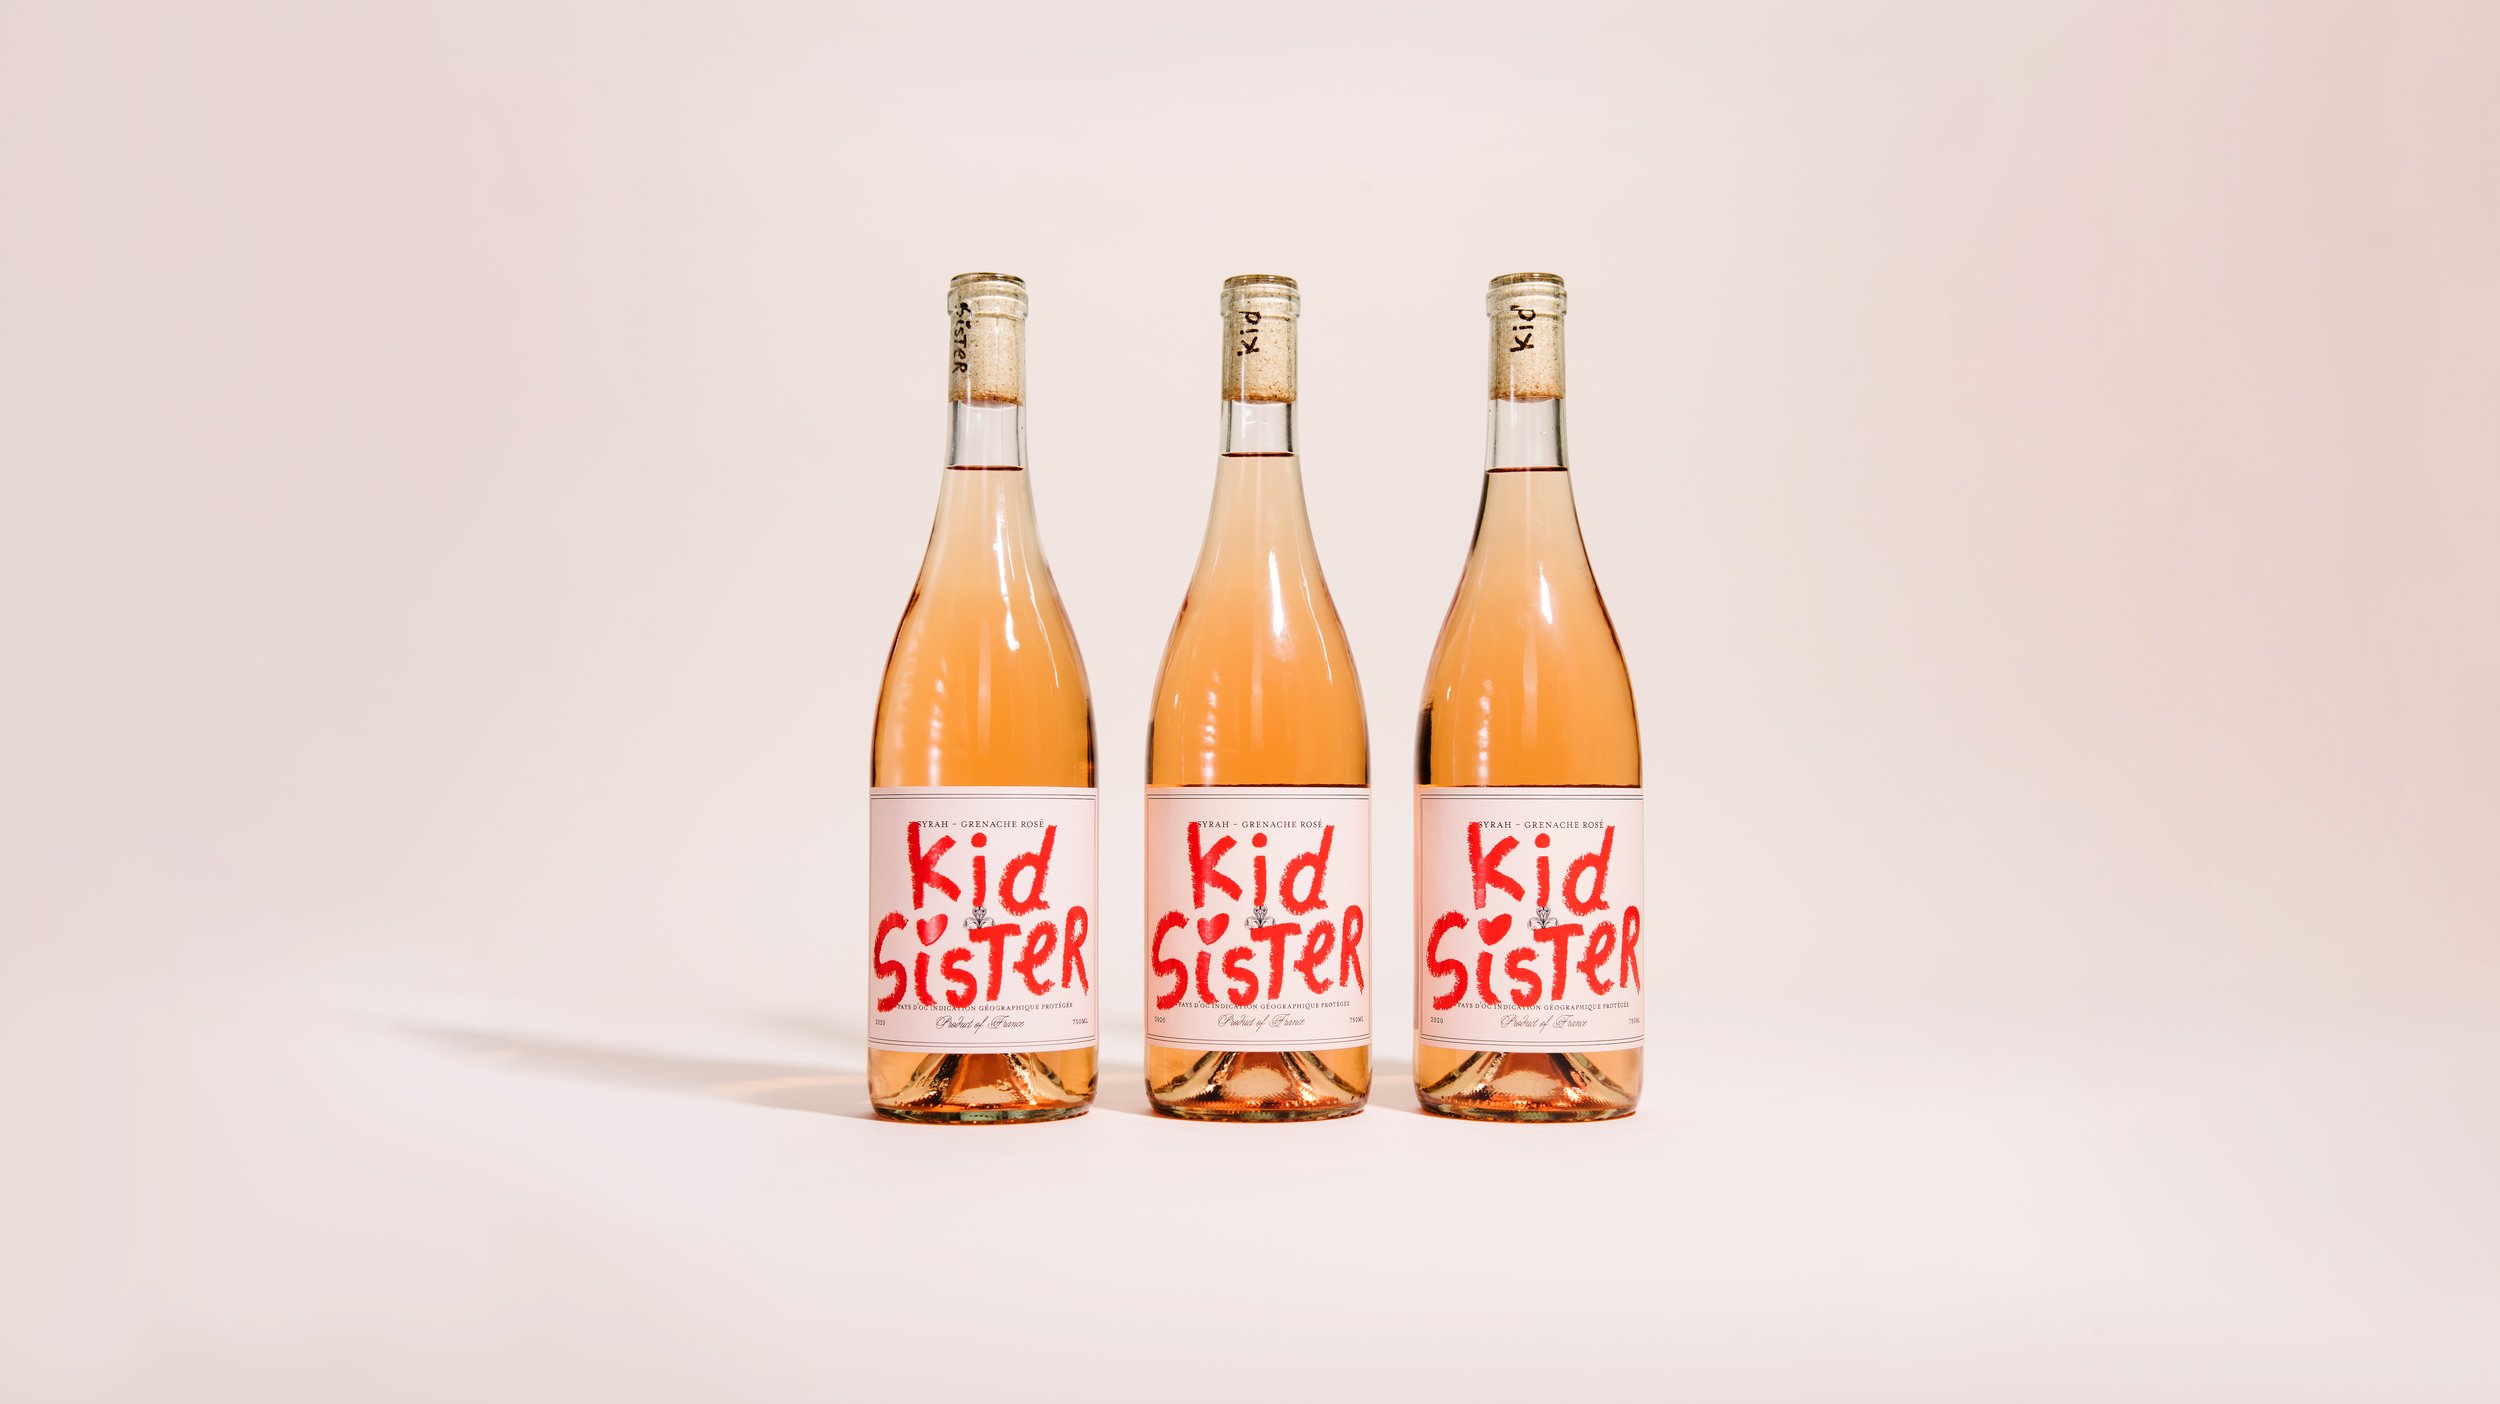  Kid Sister, Foxtrot Market (Branding &amp; Packaging) 